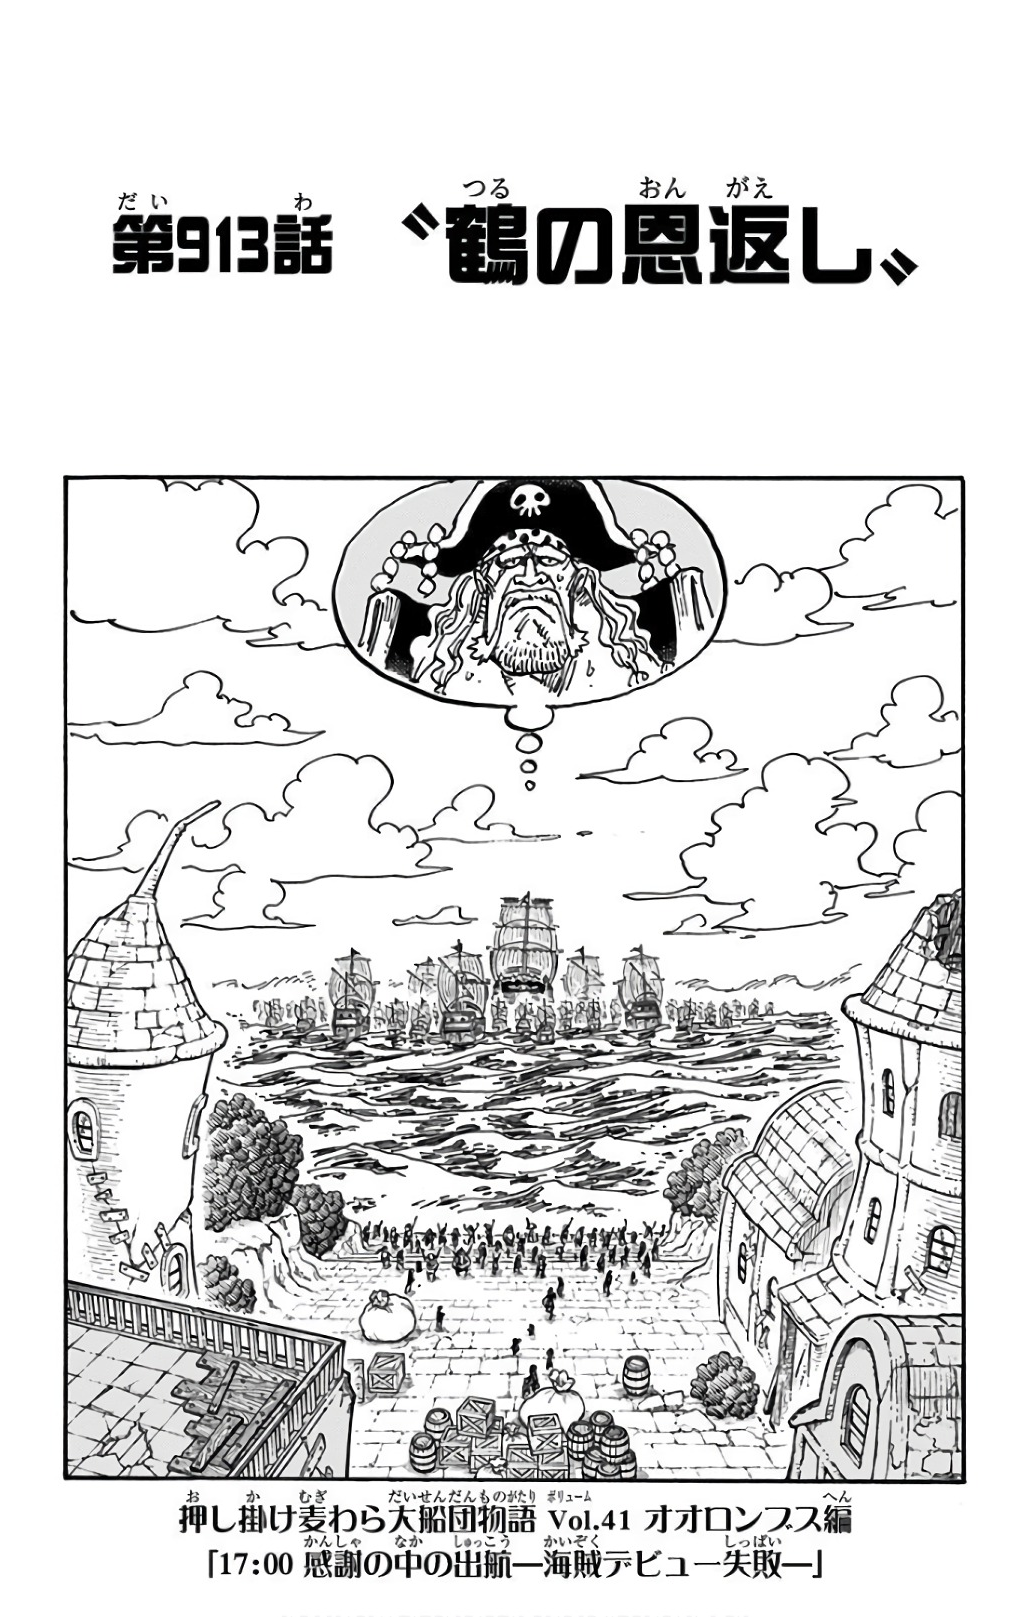 Capitulo 913 One Piece Wiki Fandom